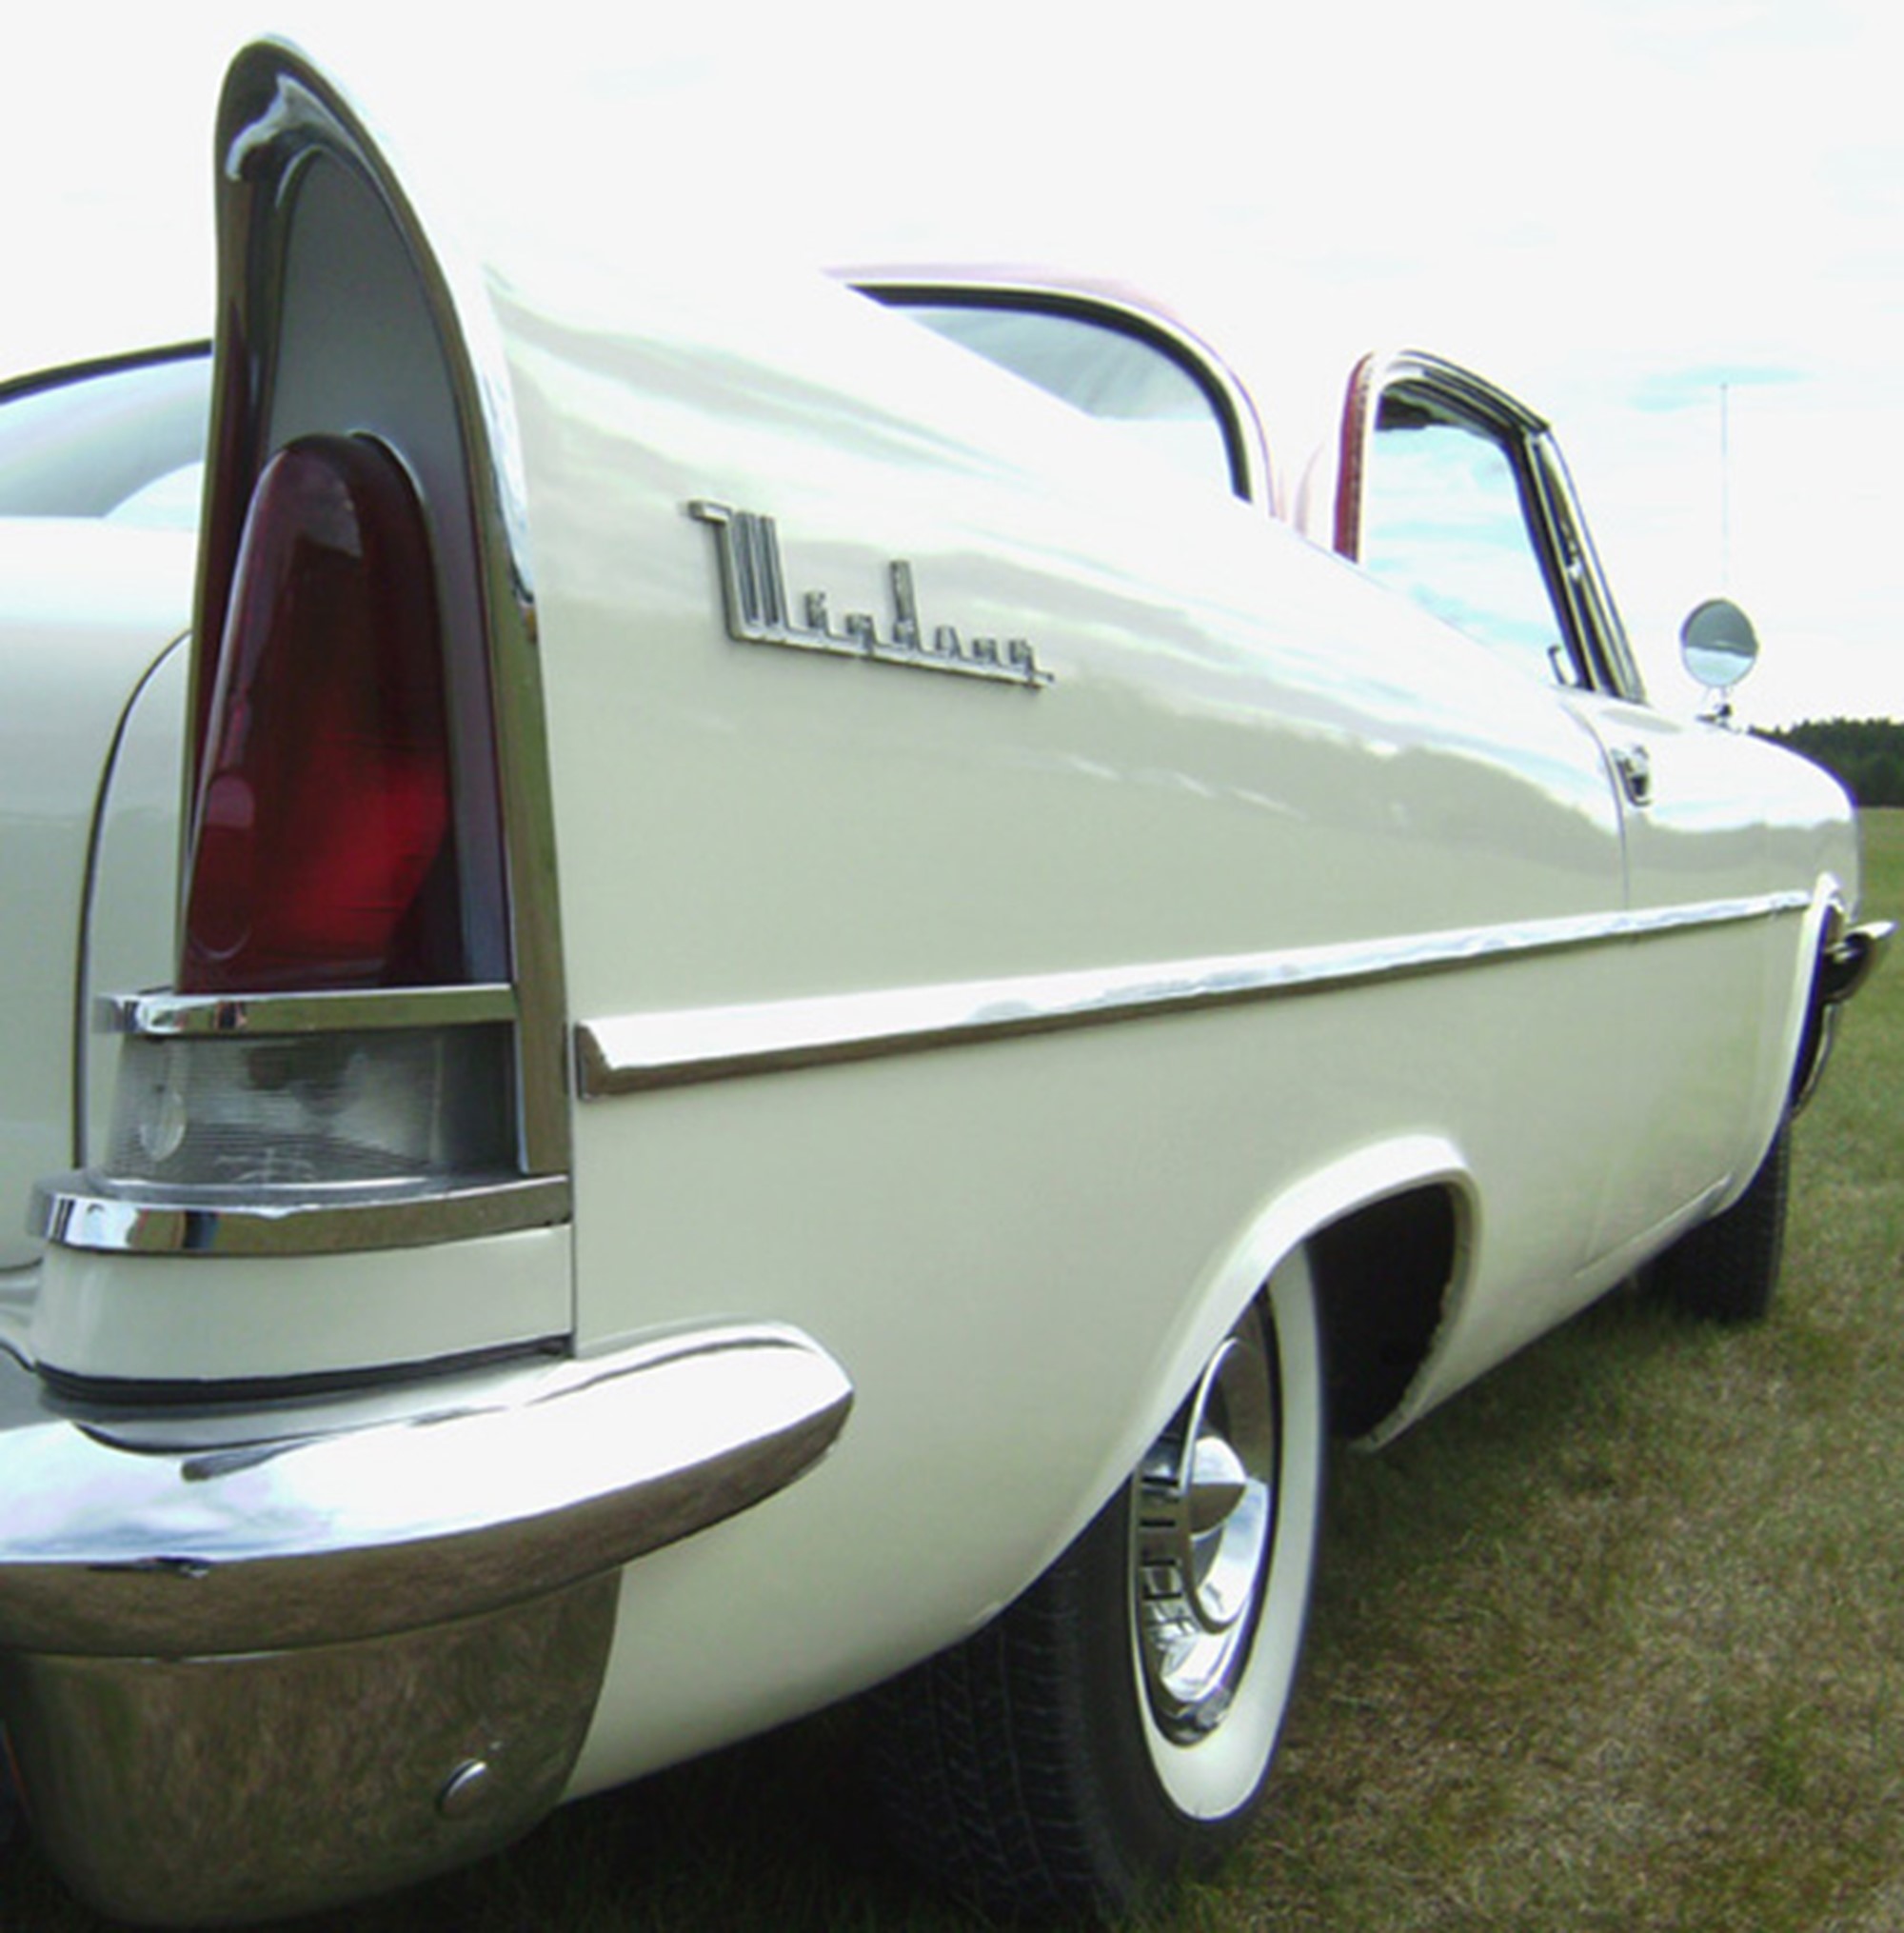 Chryslers fenor i slutet på femtiotalet är  bland det snyggaste som tillverkats. Mycket stilrena.